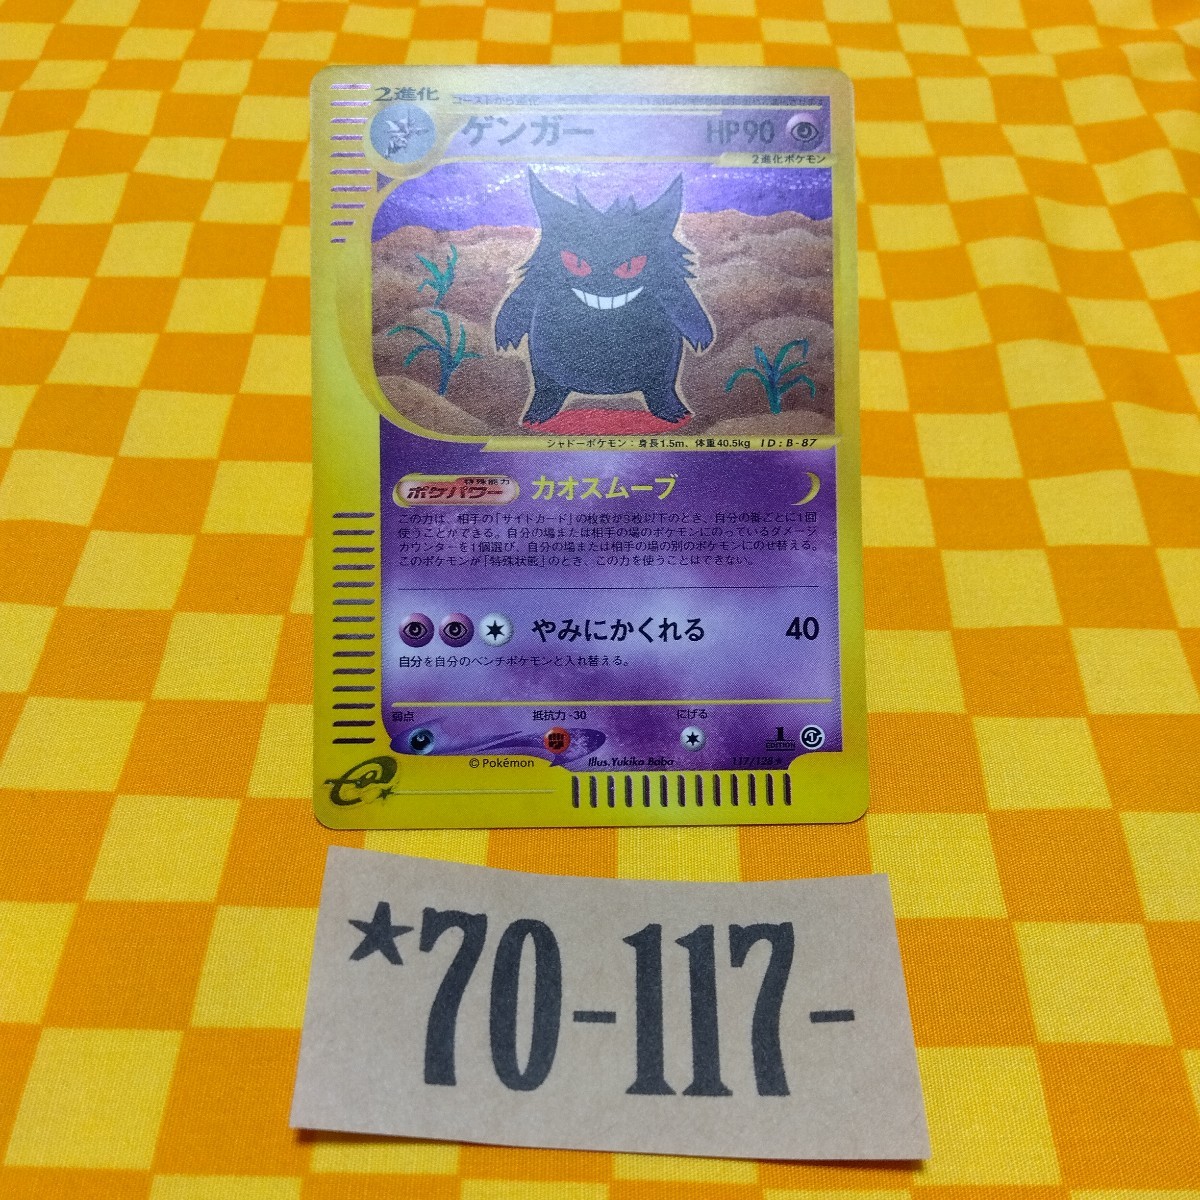 ★70-117- 117/128 ゲンガー 1枚 ポケモンカード e Pokemon ポケモン カード 基本拡張パック 第一弾 第１弾 初弾 1 ed